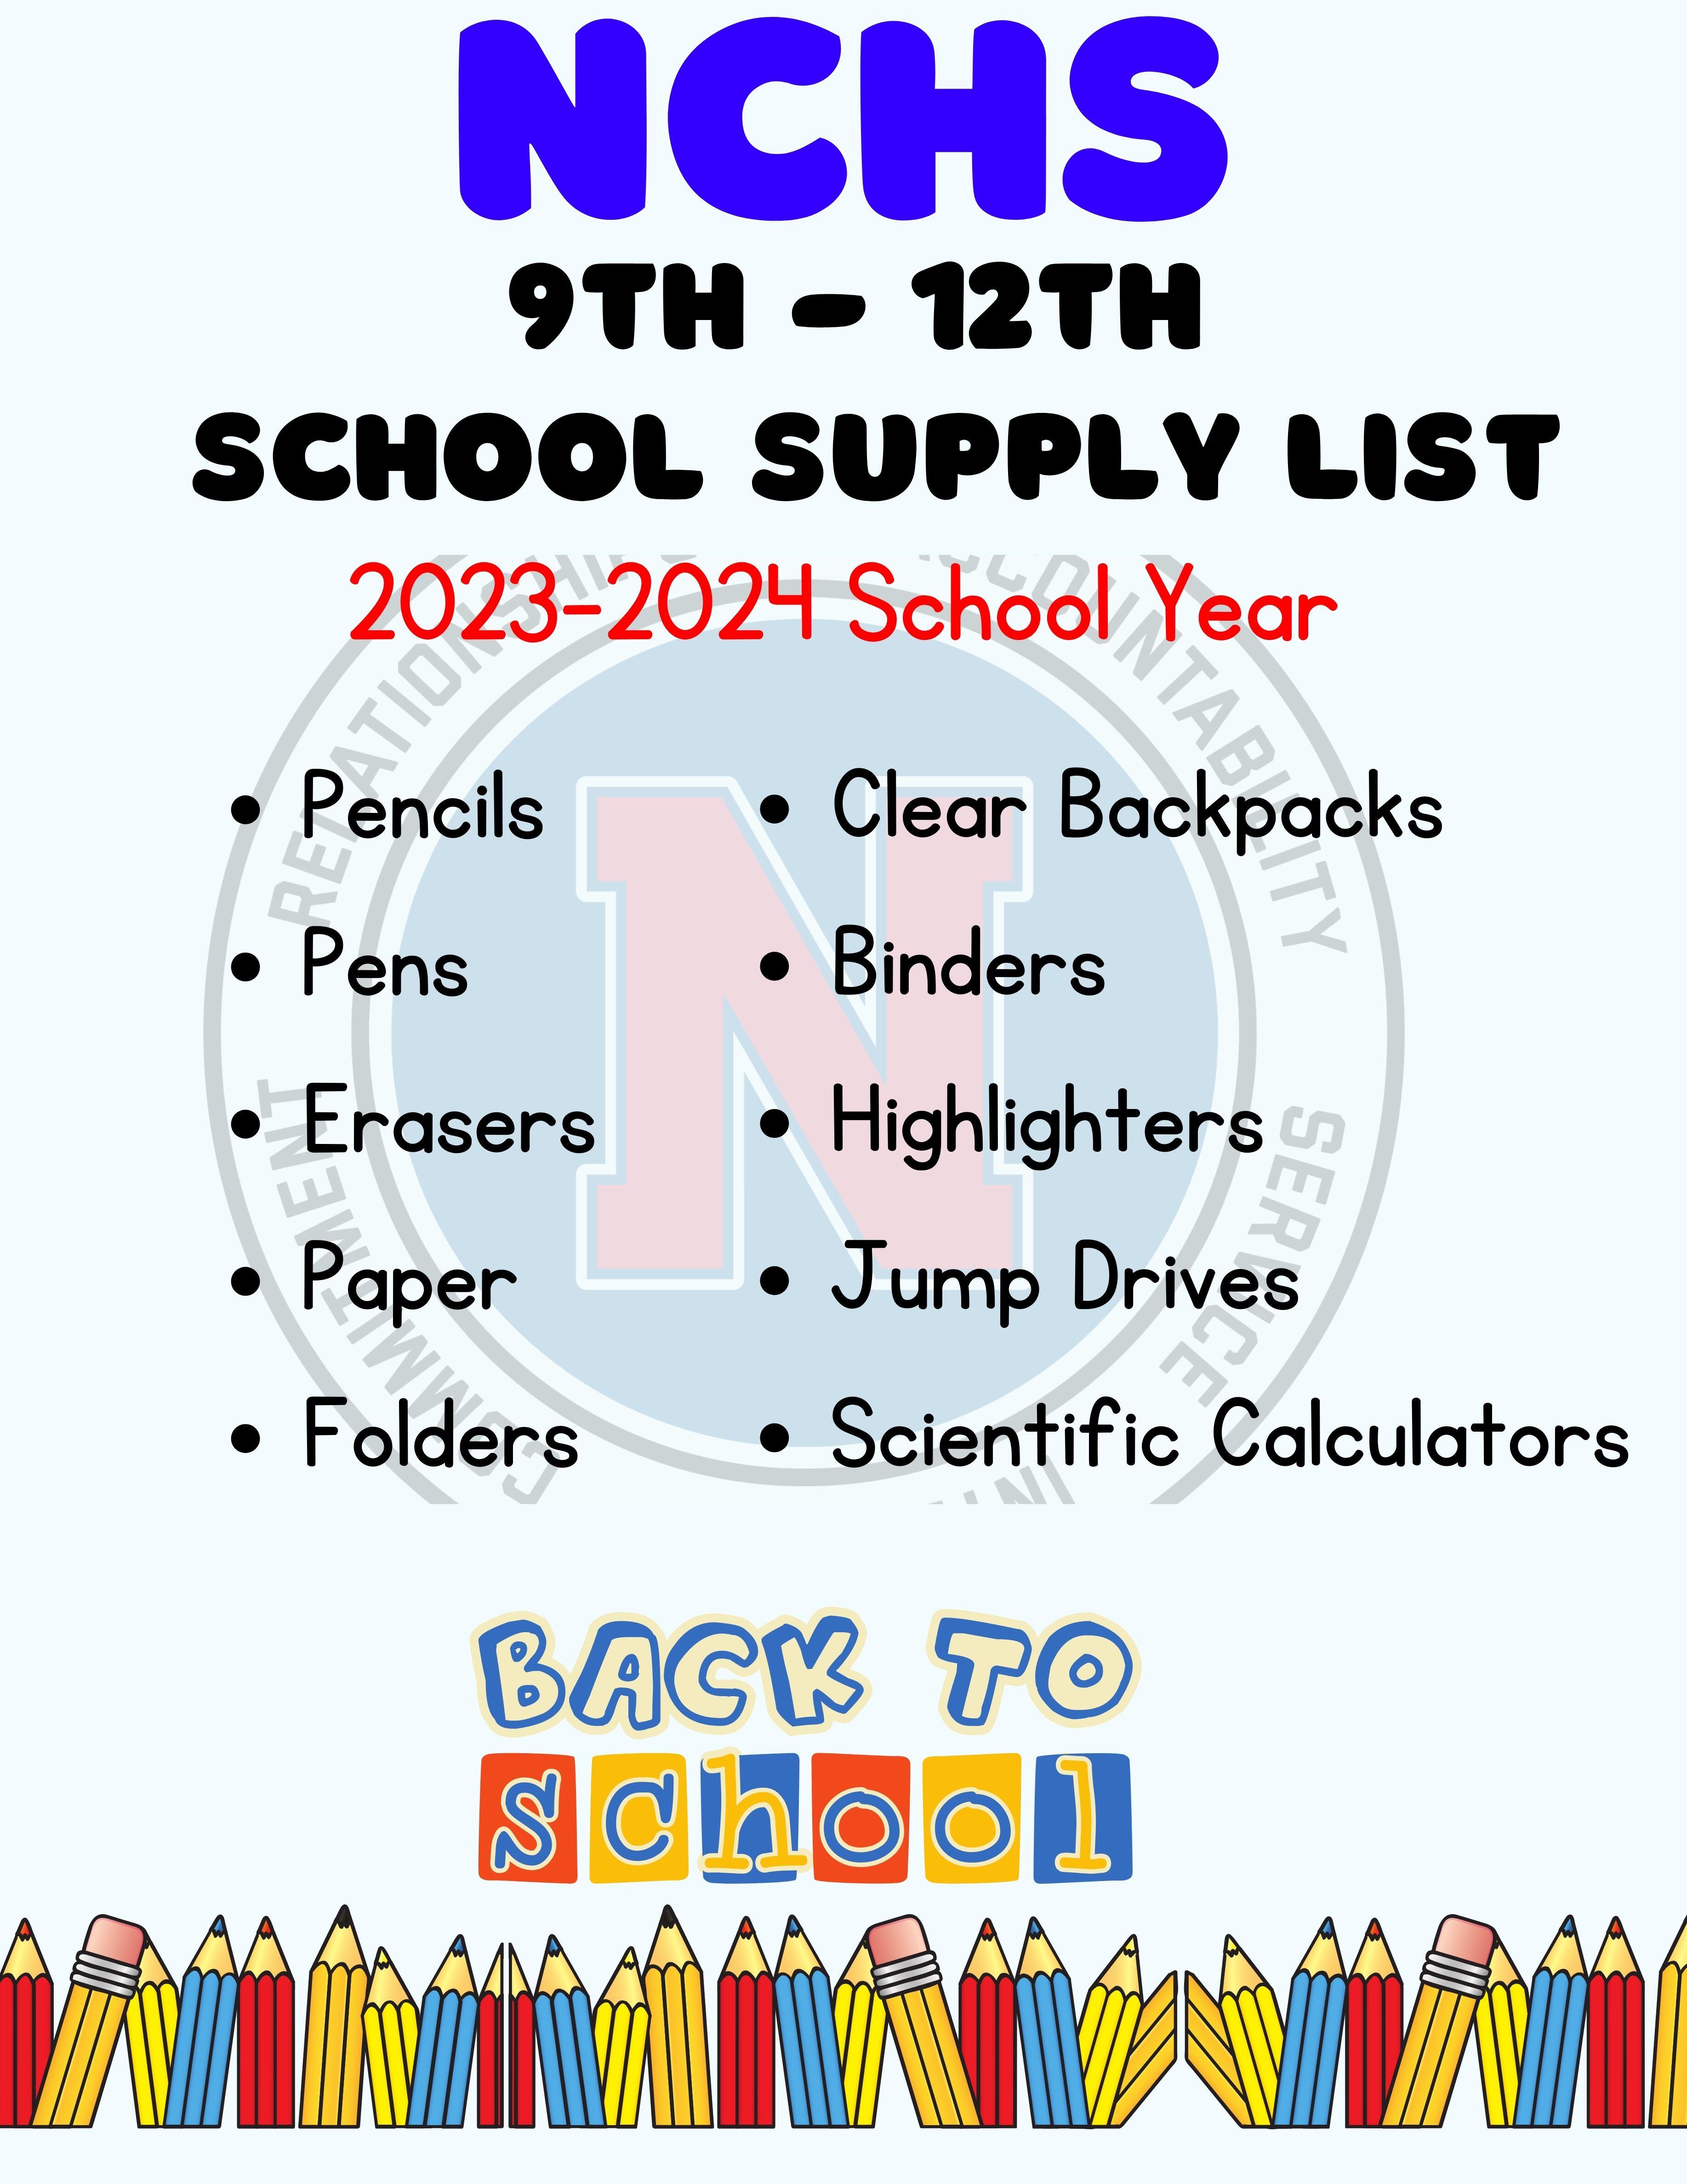 NCHS School Supply List